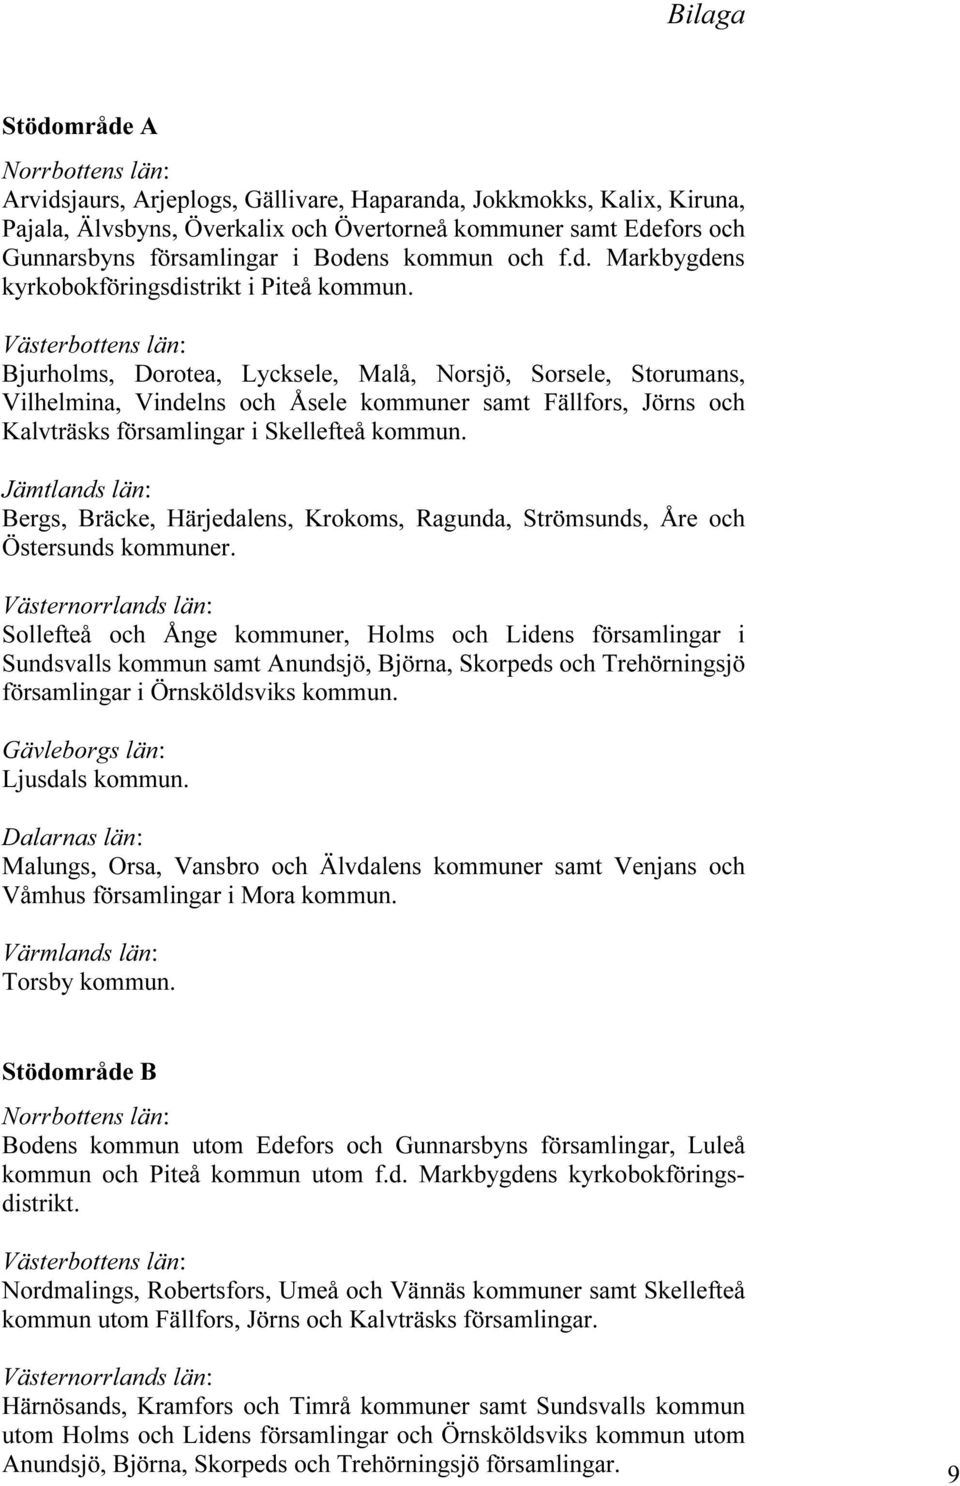 Västerbottens län: Bjurholms, Dorotea, Lycksele, Malå, Norsjö, Sorsele, Storumans, Vilhelmina, Vindelns och Åsele kommuner samt Fällfors, Jörns och Kalvträsks församlingar i Skellefteå kommun.